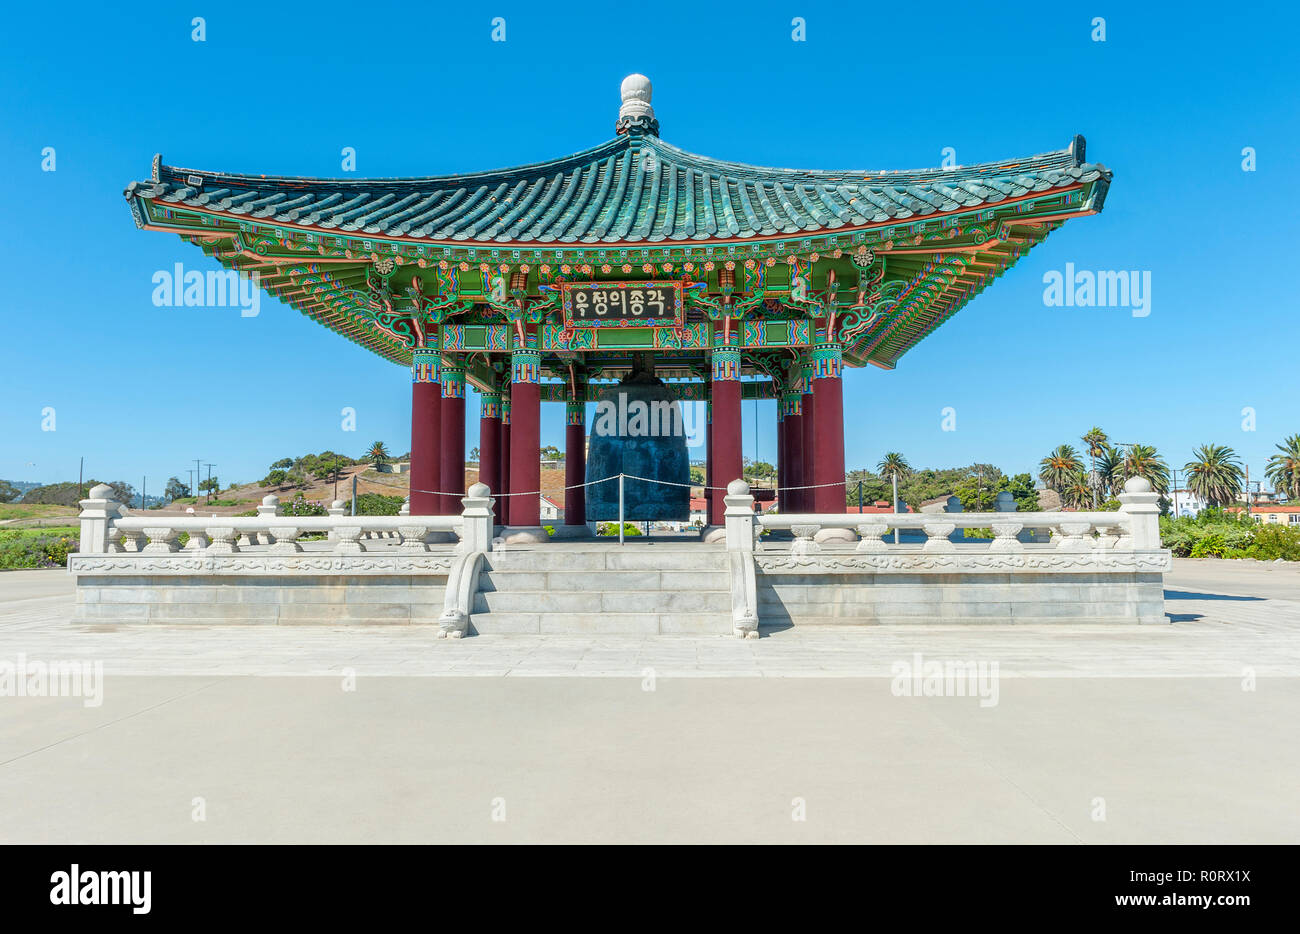 La campana Coreana di amicizia è un enorme campana di bronzo alloggiato in un padiglione in pietra in Angel's Gate Park, in San Pedro quartiere di Los Angeles. Foto Stock